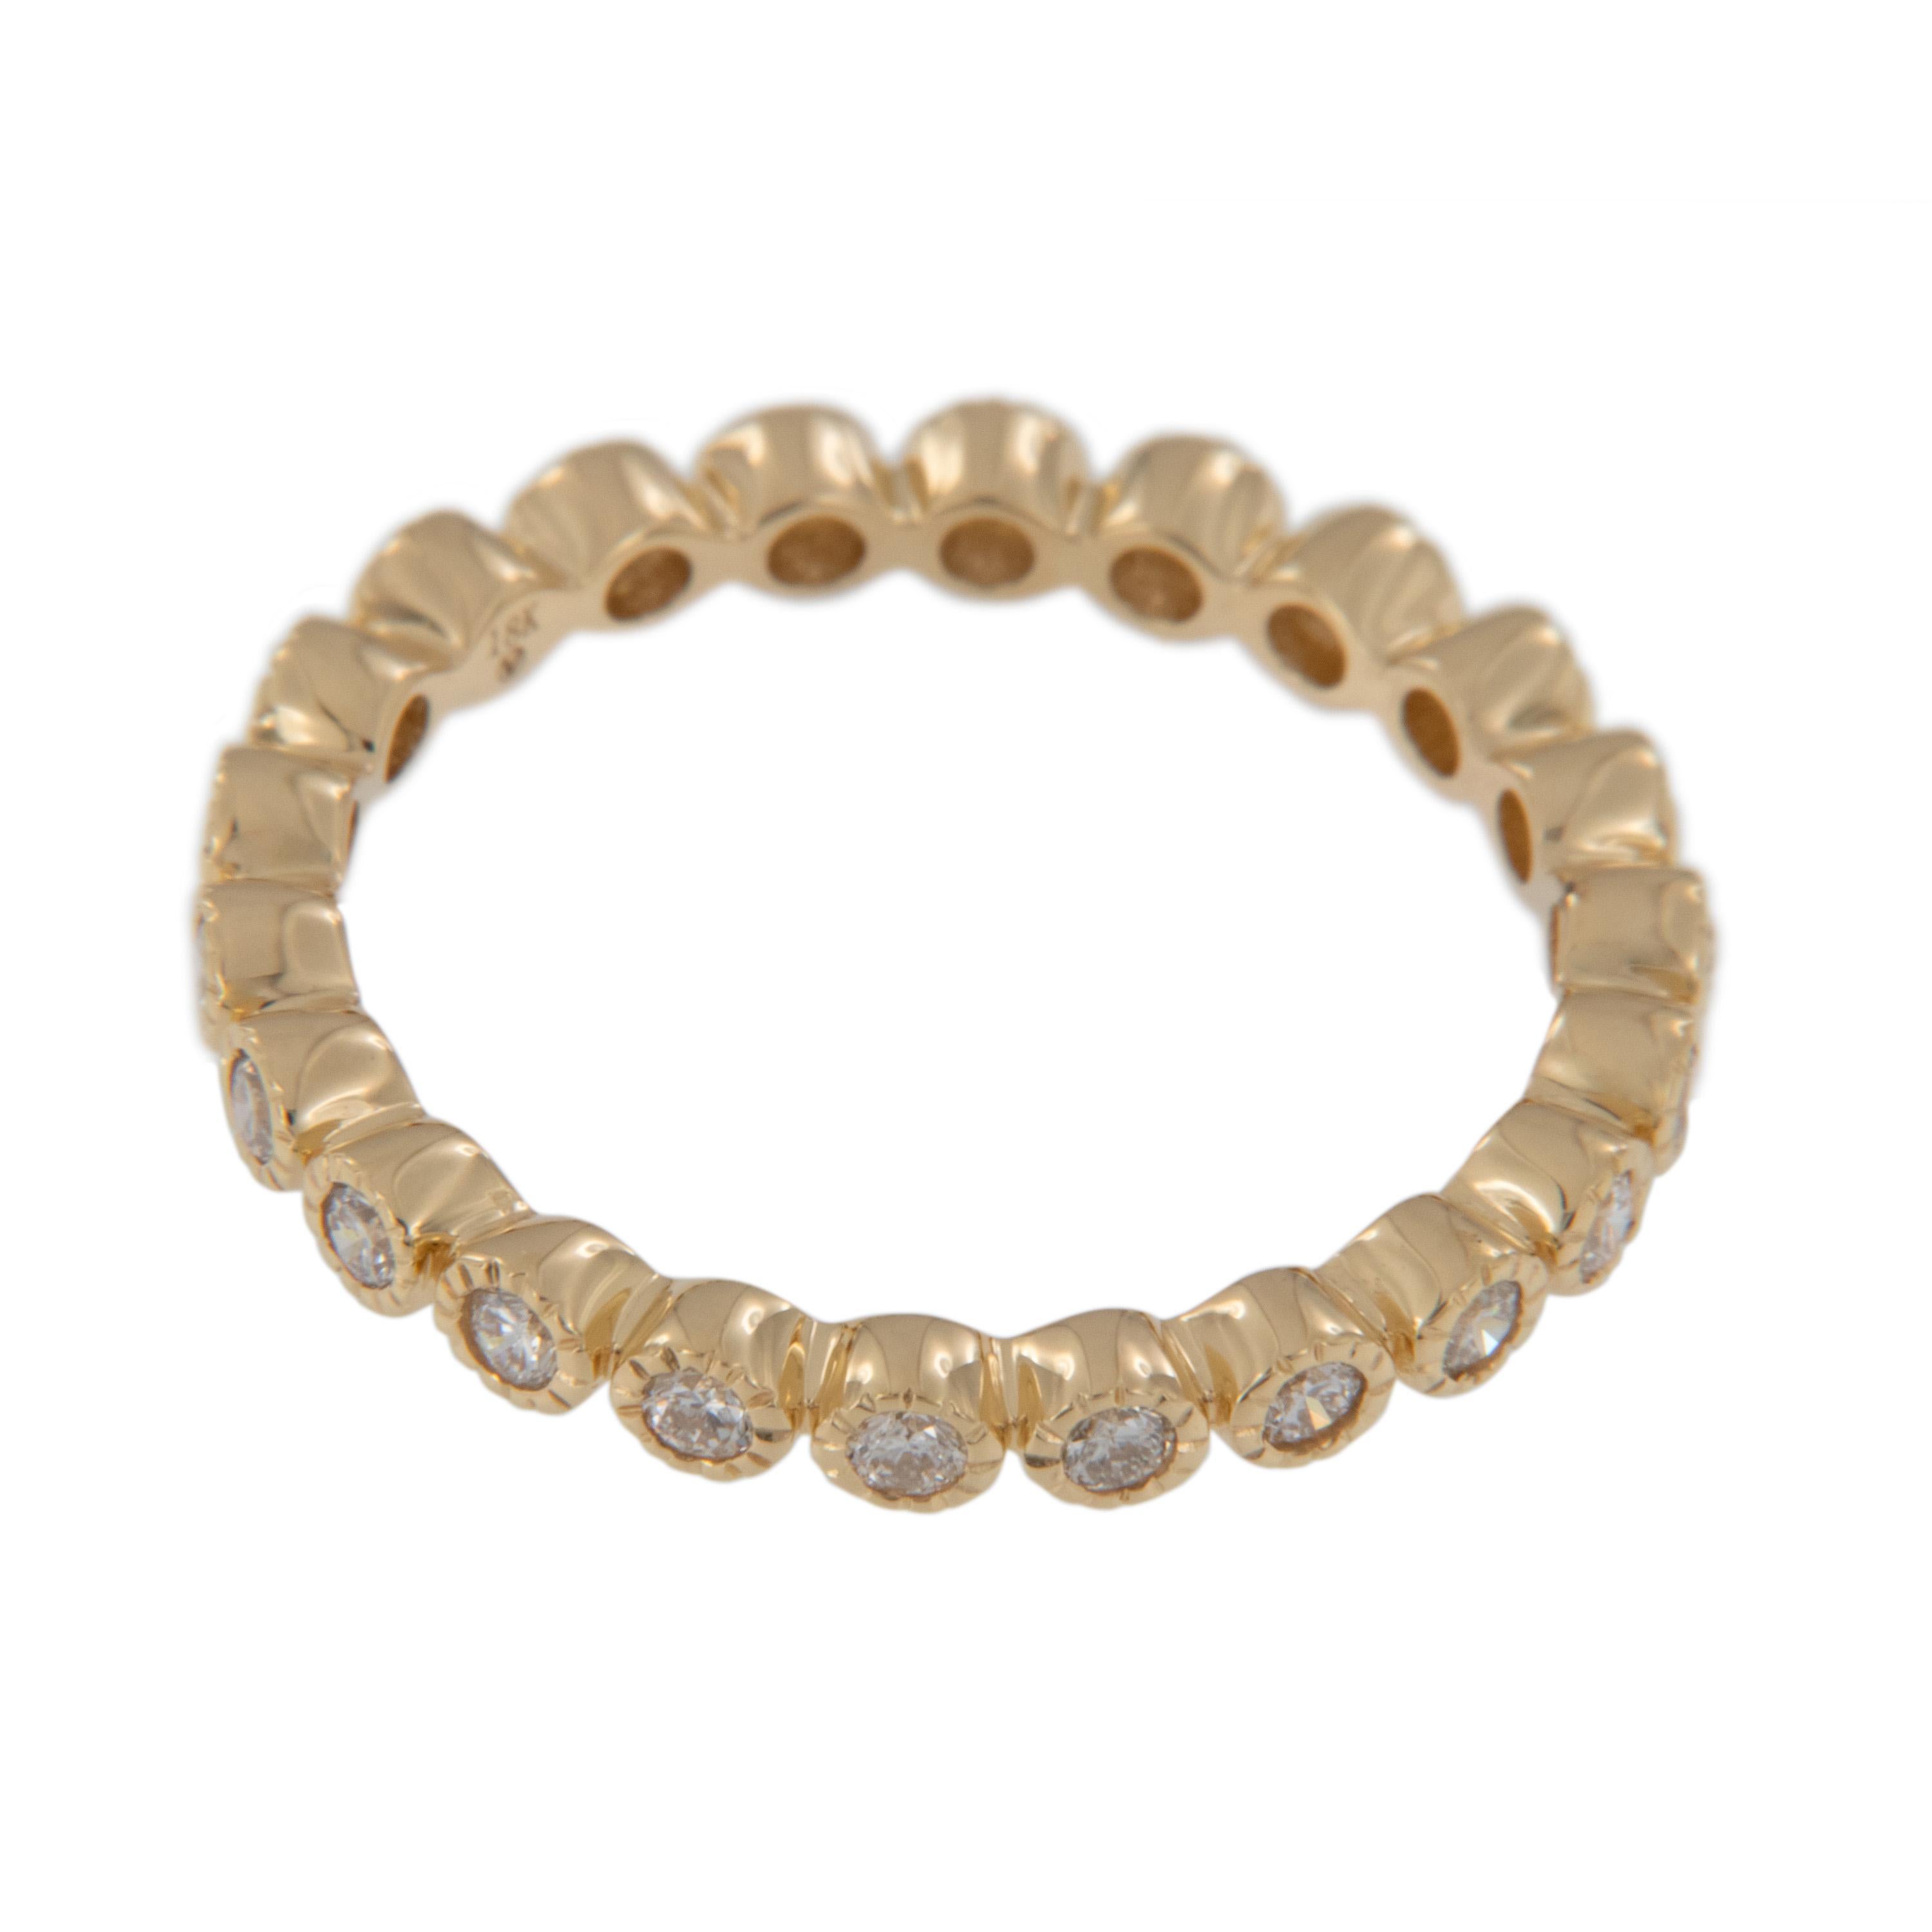 Créé en or jaune 18 carats, ce magnifique bracelet d'éternité est orné de 23 diamants ronds de taille brillant = 0,42 Cttw, chacun d'eux étant individuellement serti dans des chatons bordés de milgrain pour un look époustouflant. Vous pouvez